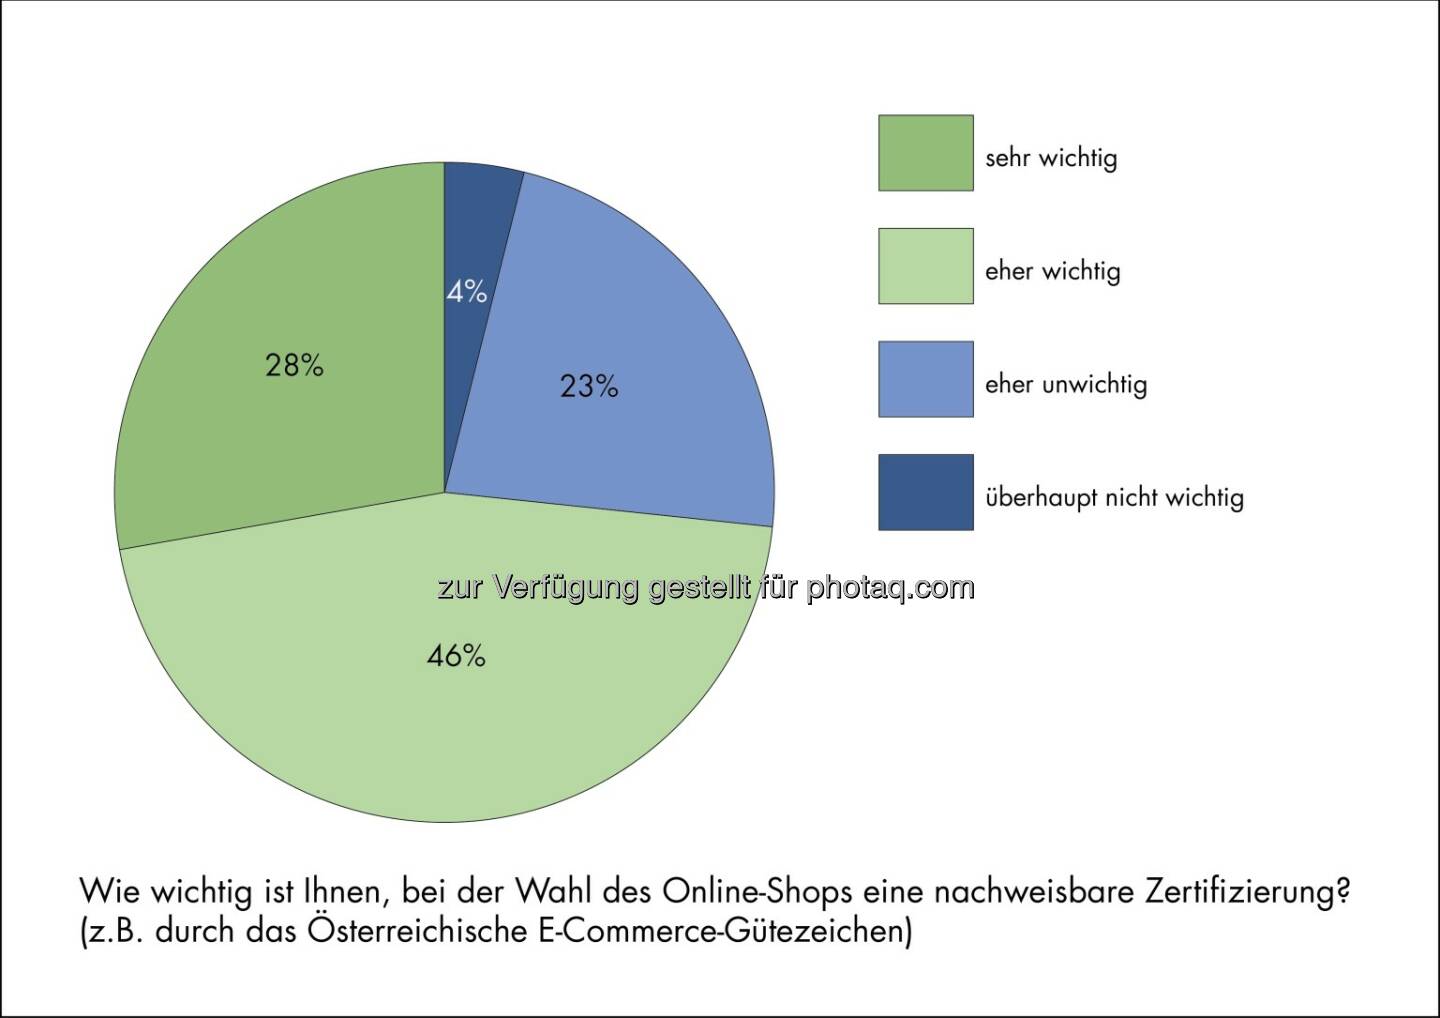 Wie wichtig ist die Zertifizierung des Online-Shops - Darauf legen ÖsterreicherInnen beim Online-Shopping Wert - Österreichisches E-Commerce-Gütezeichen: Aktuelle Studie (Bild: Österreichisches E-Commerce-Gütezeichen)